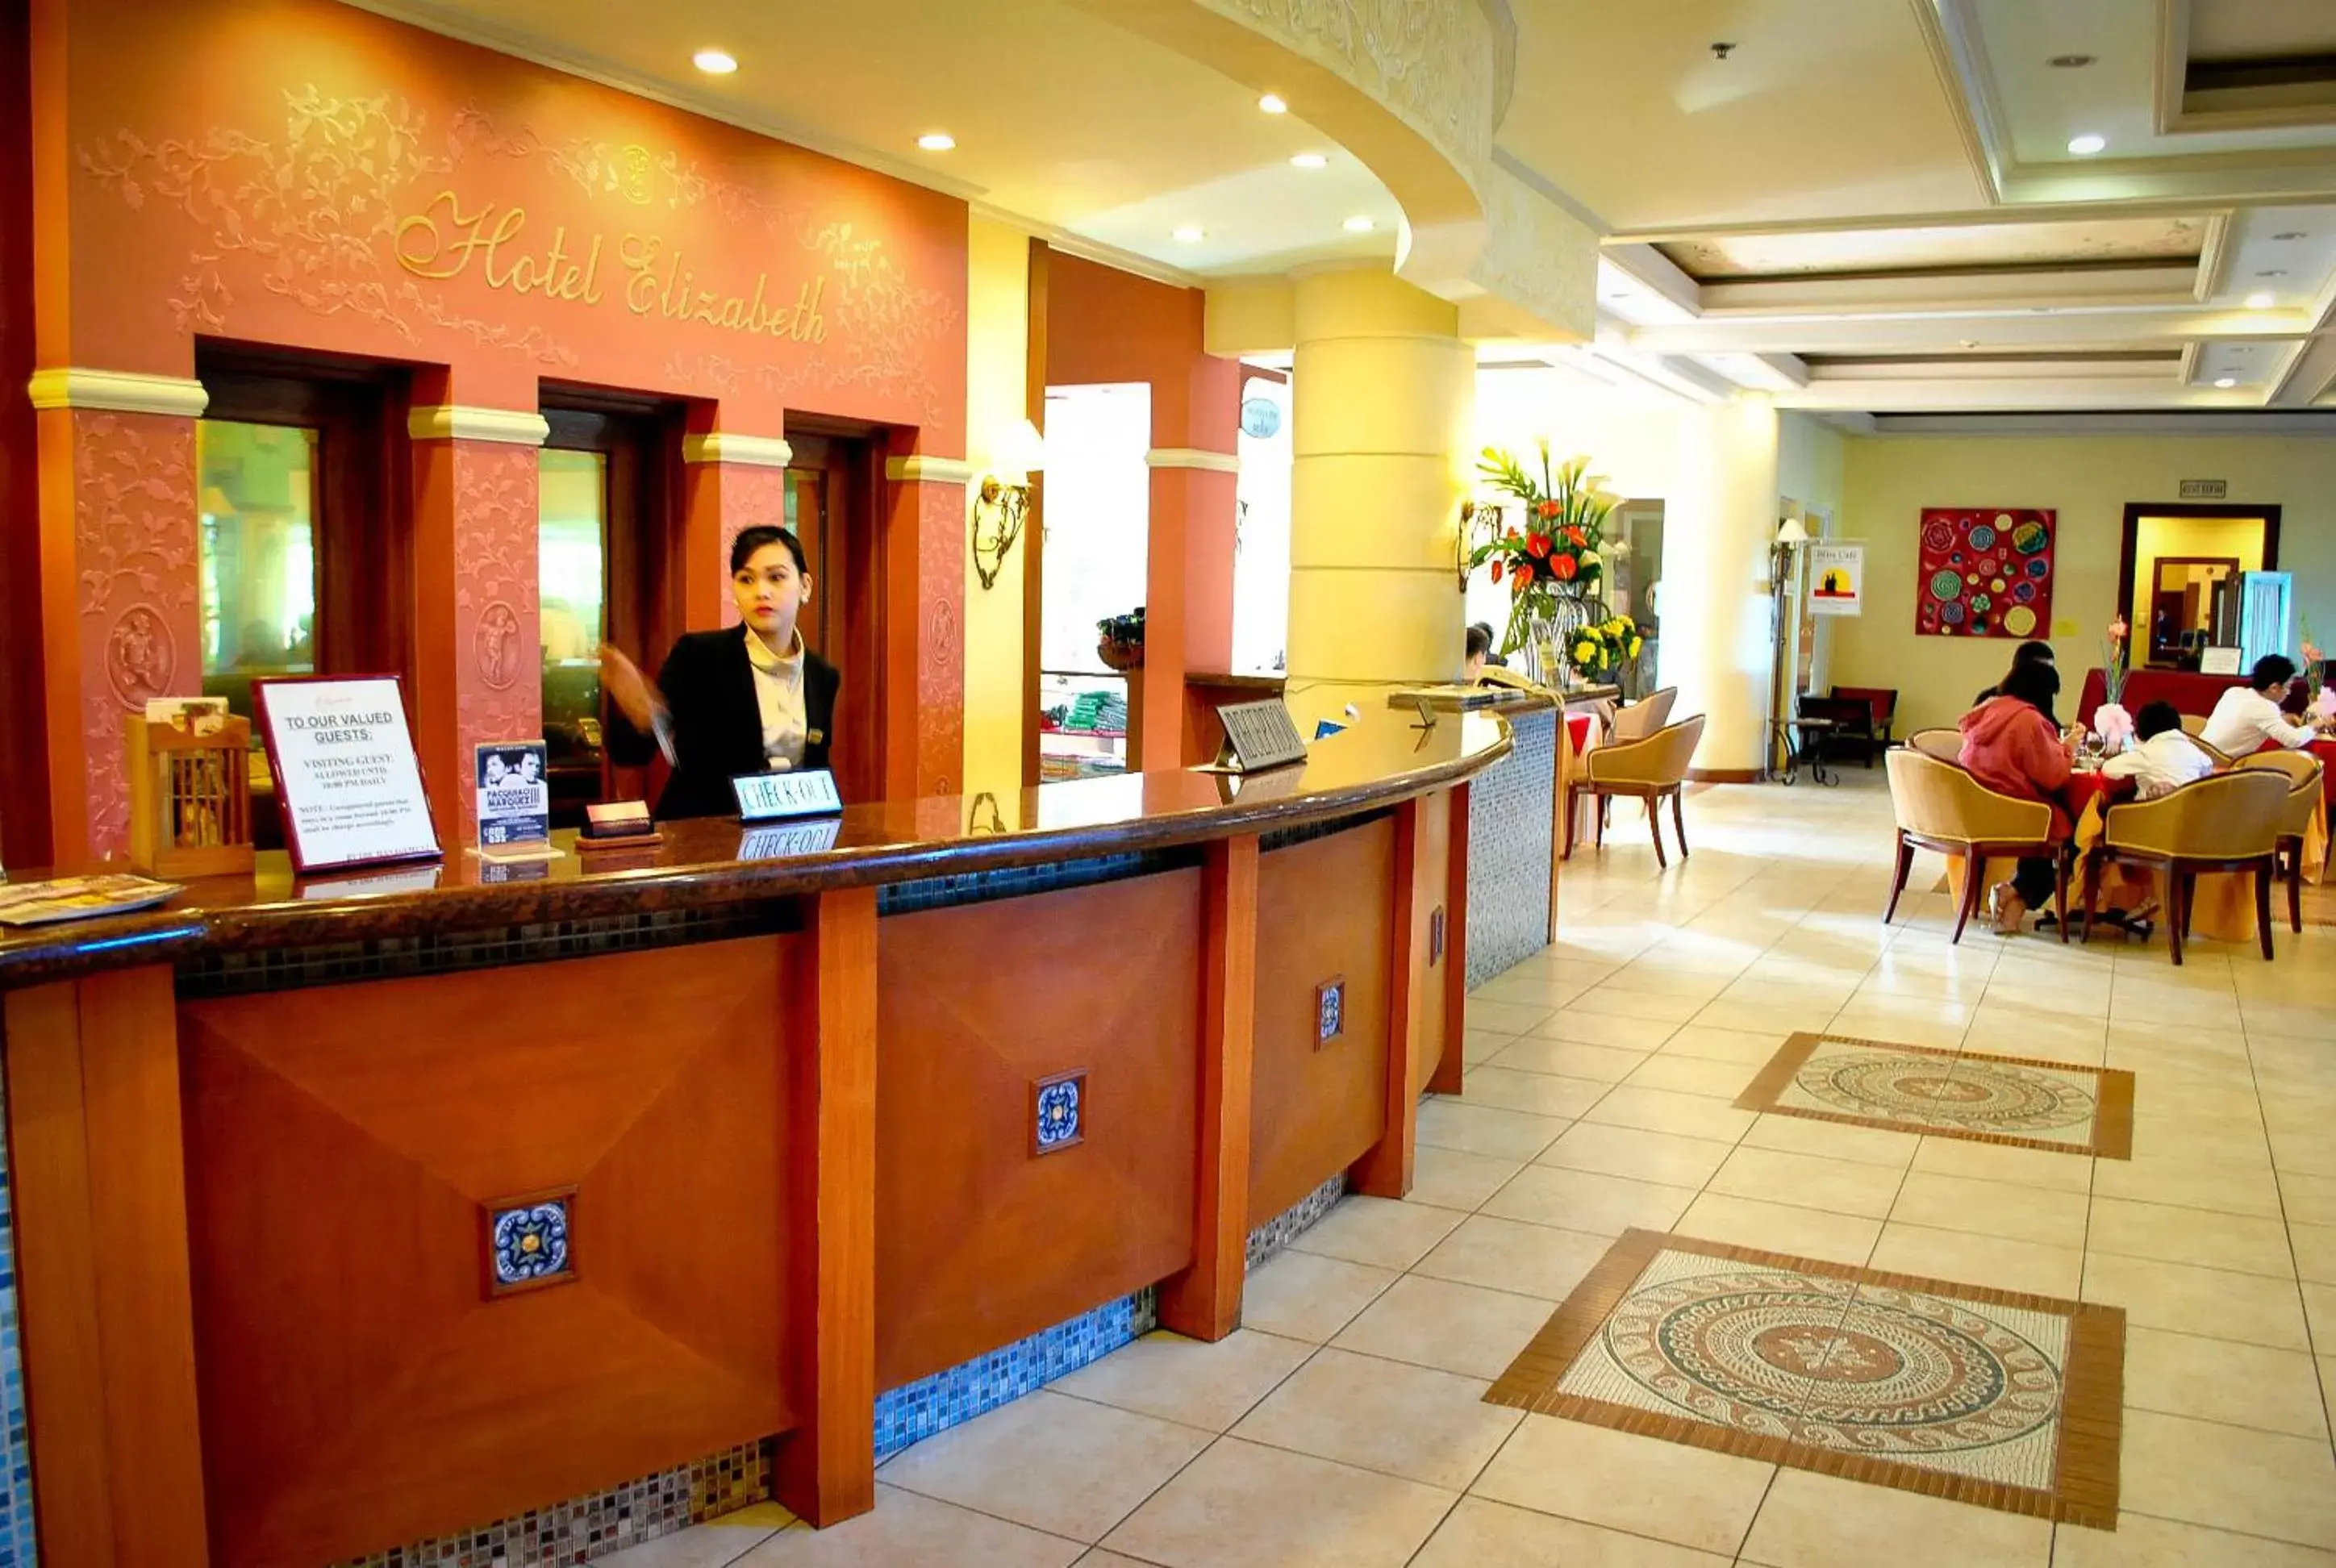 Lobby or reception, Lobby/Reception in Hotel Elizabeth - Baguio